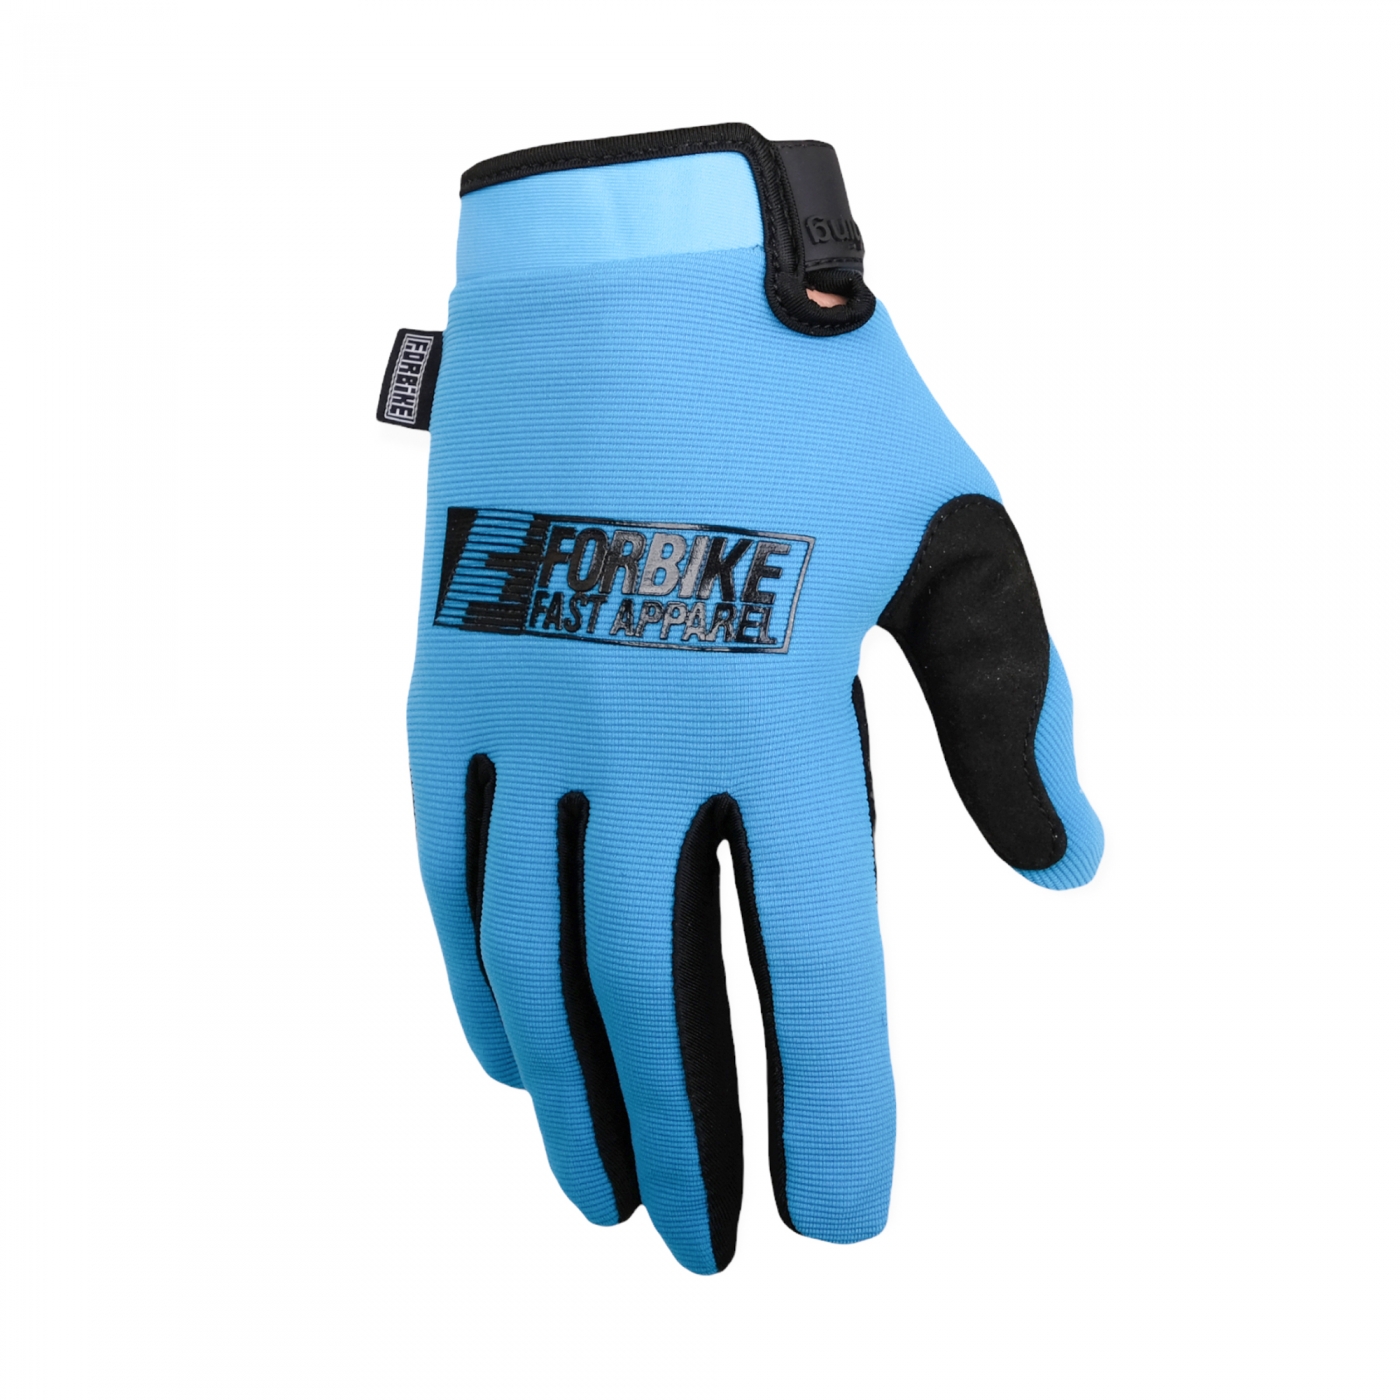 Gloves Spandex Cerulean